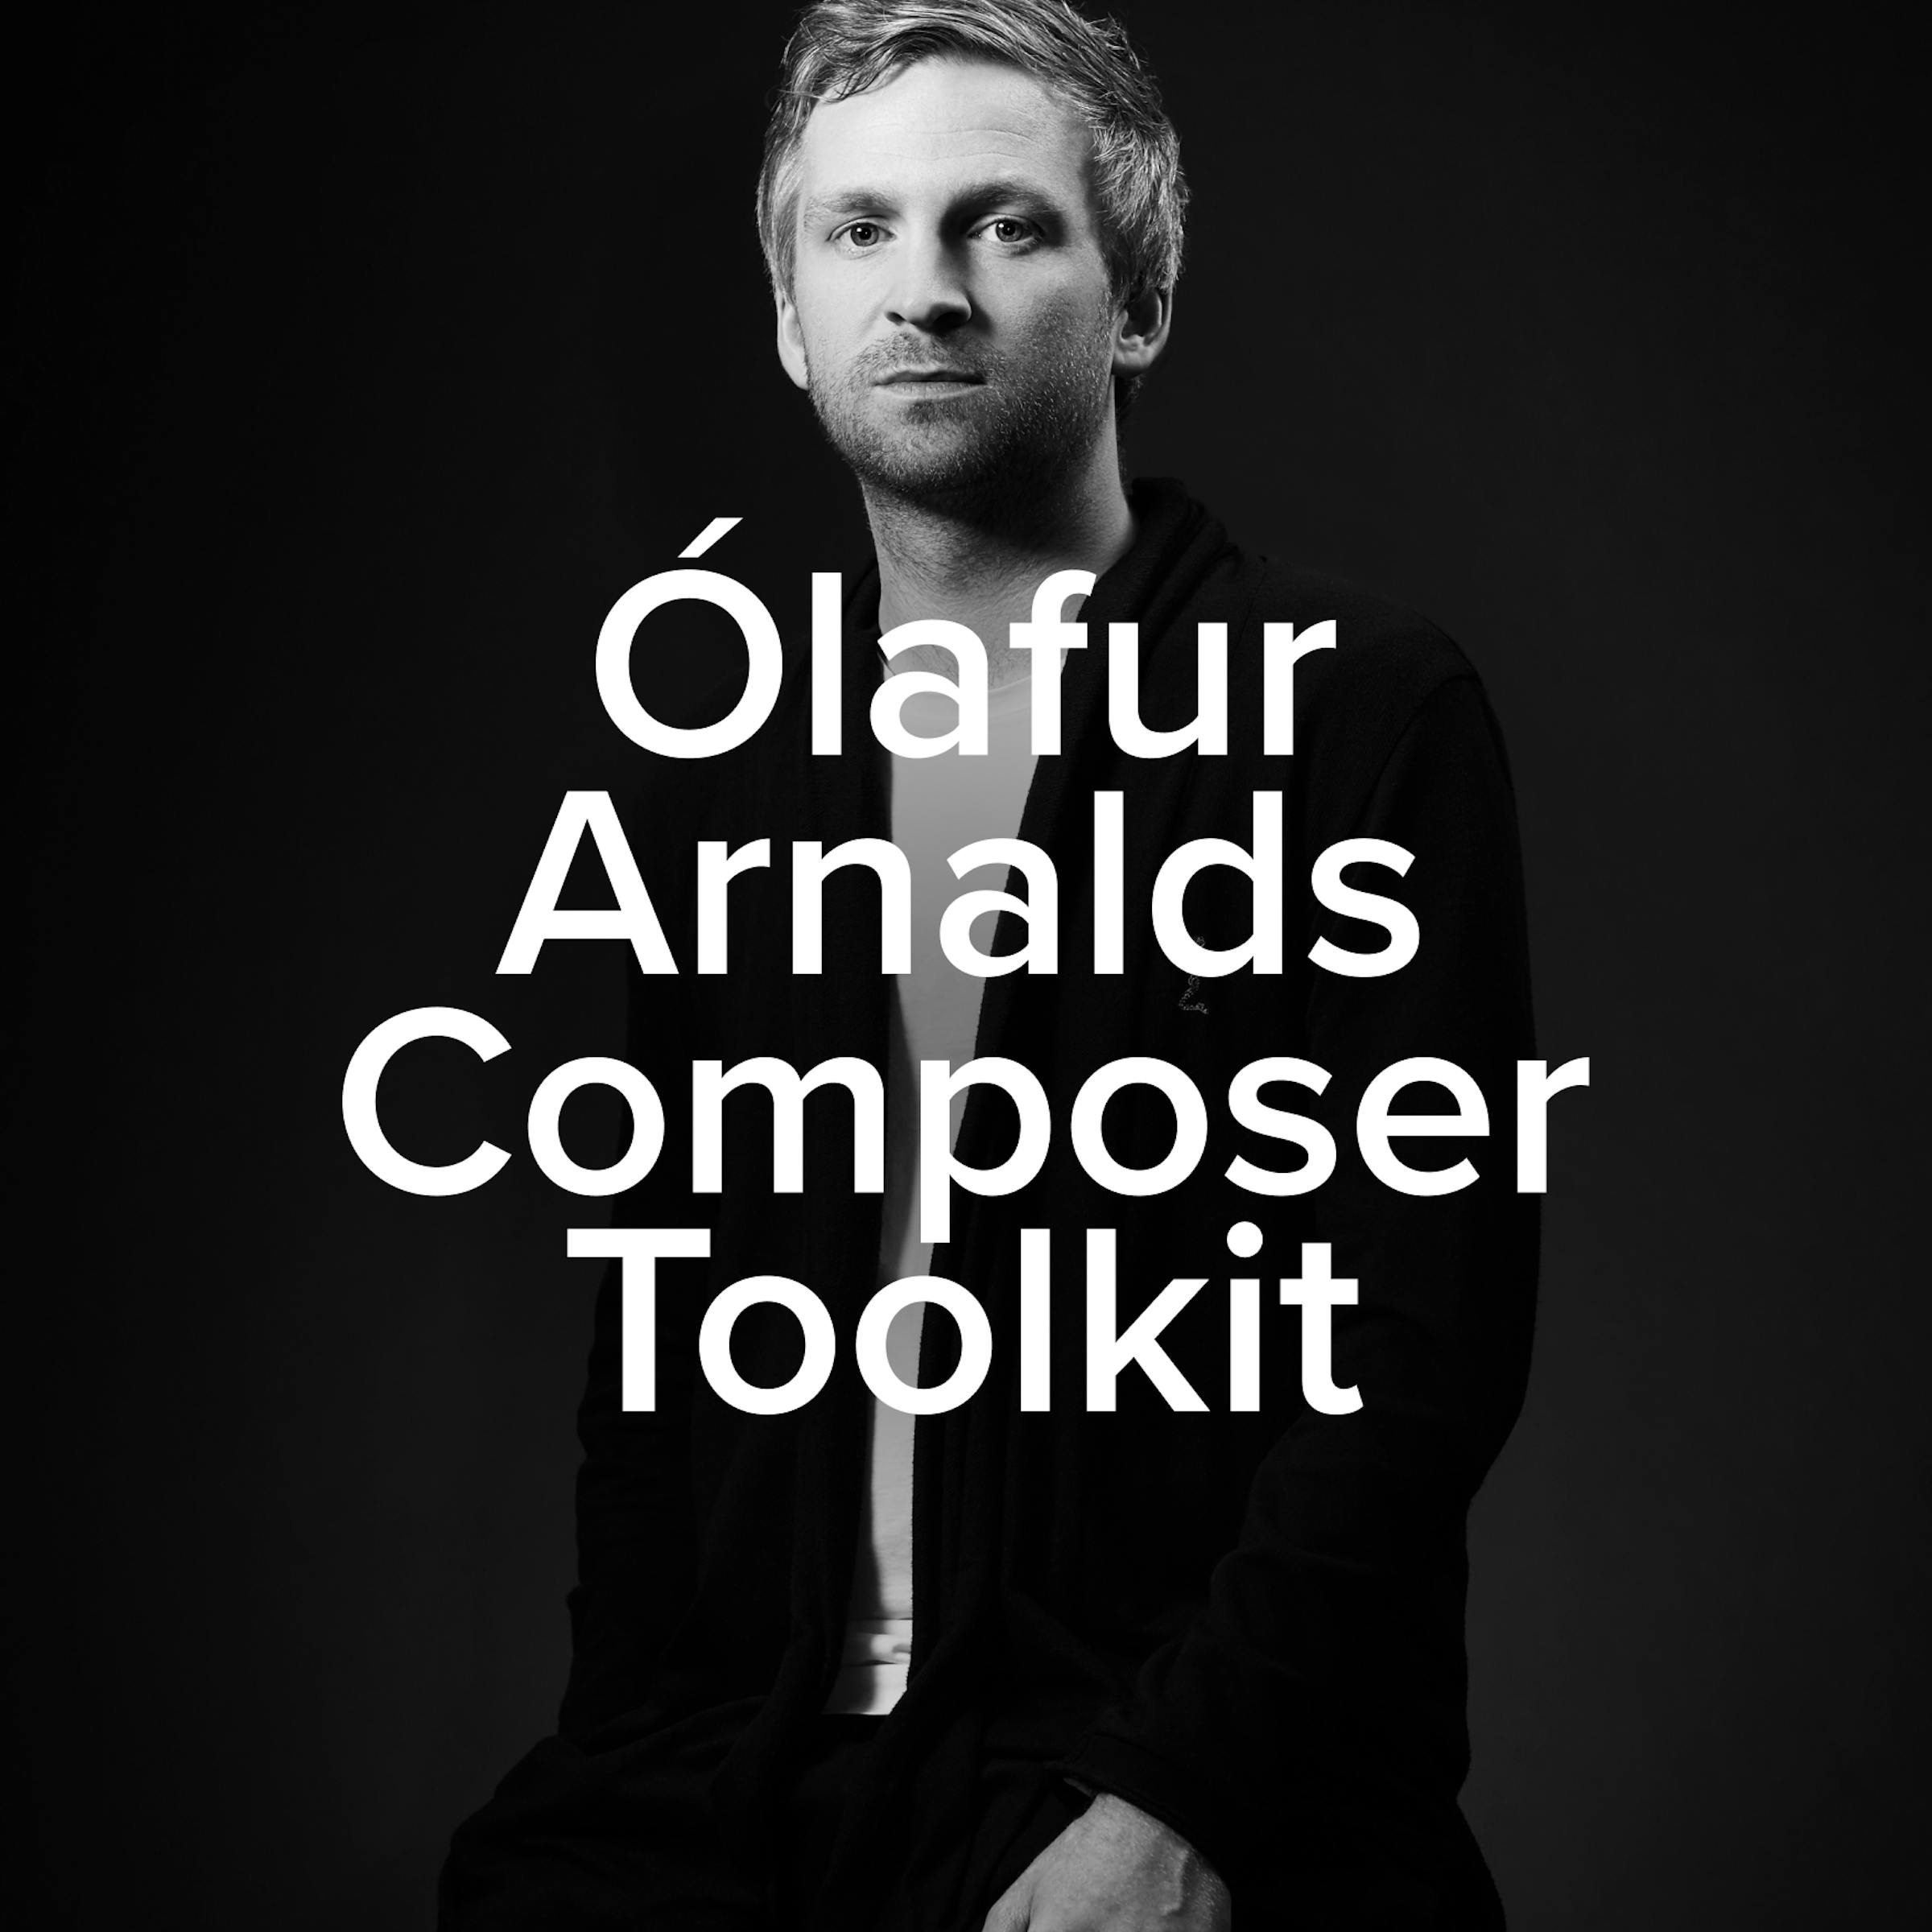 Olafur Arnalds Composer Toolkit artwork